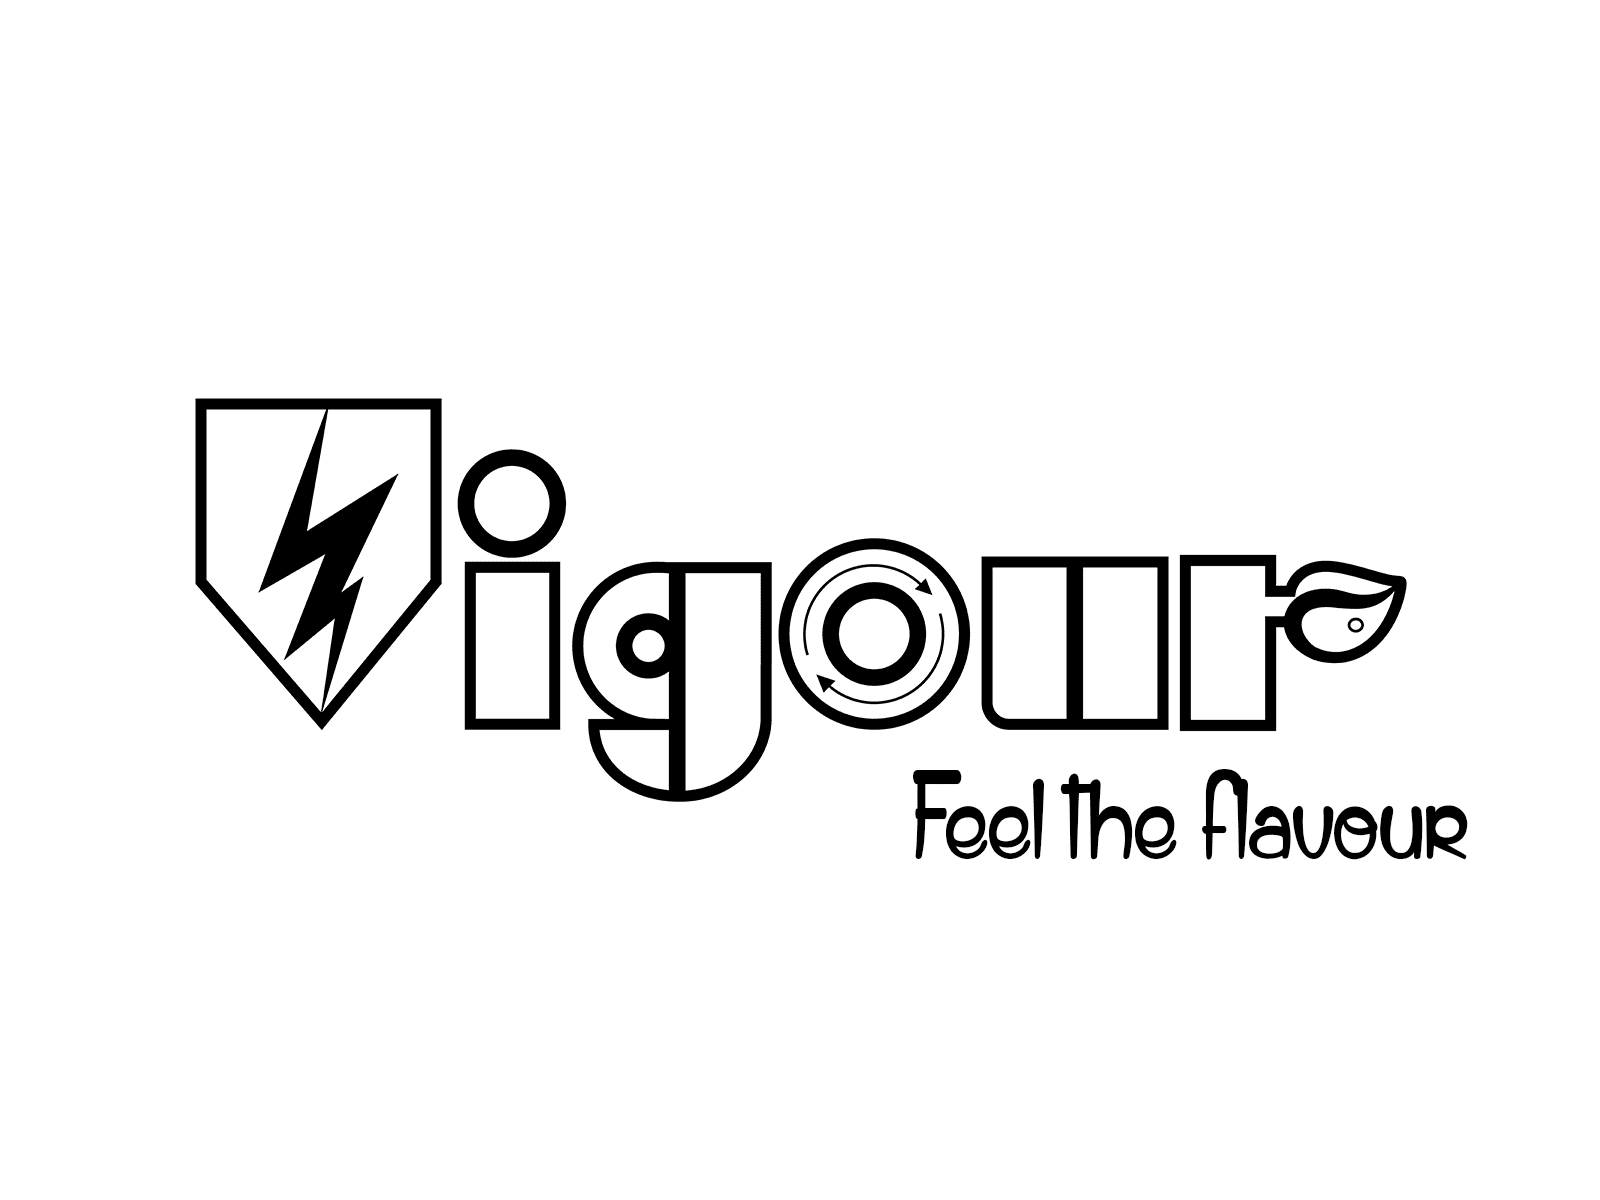 Vigour company logo design variations